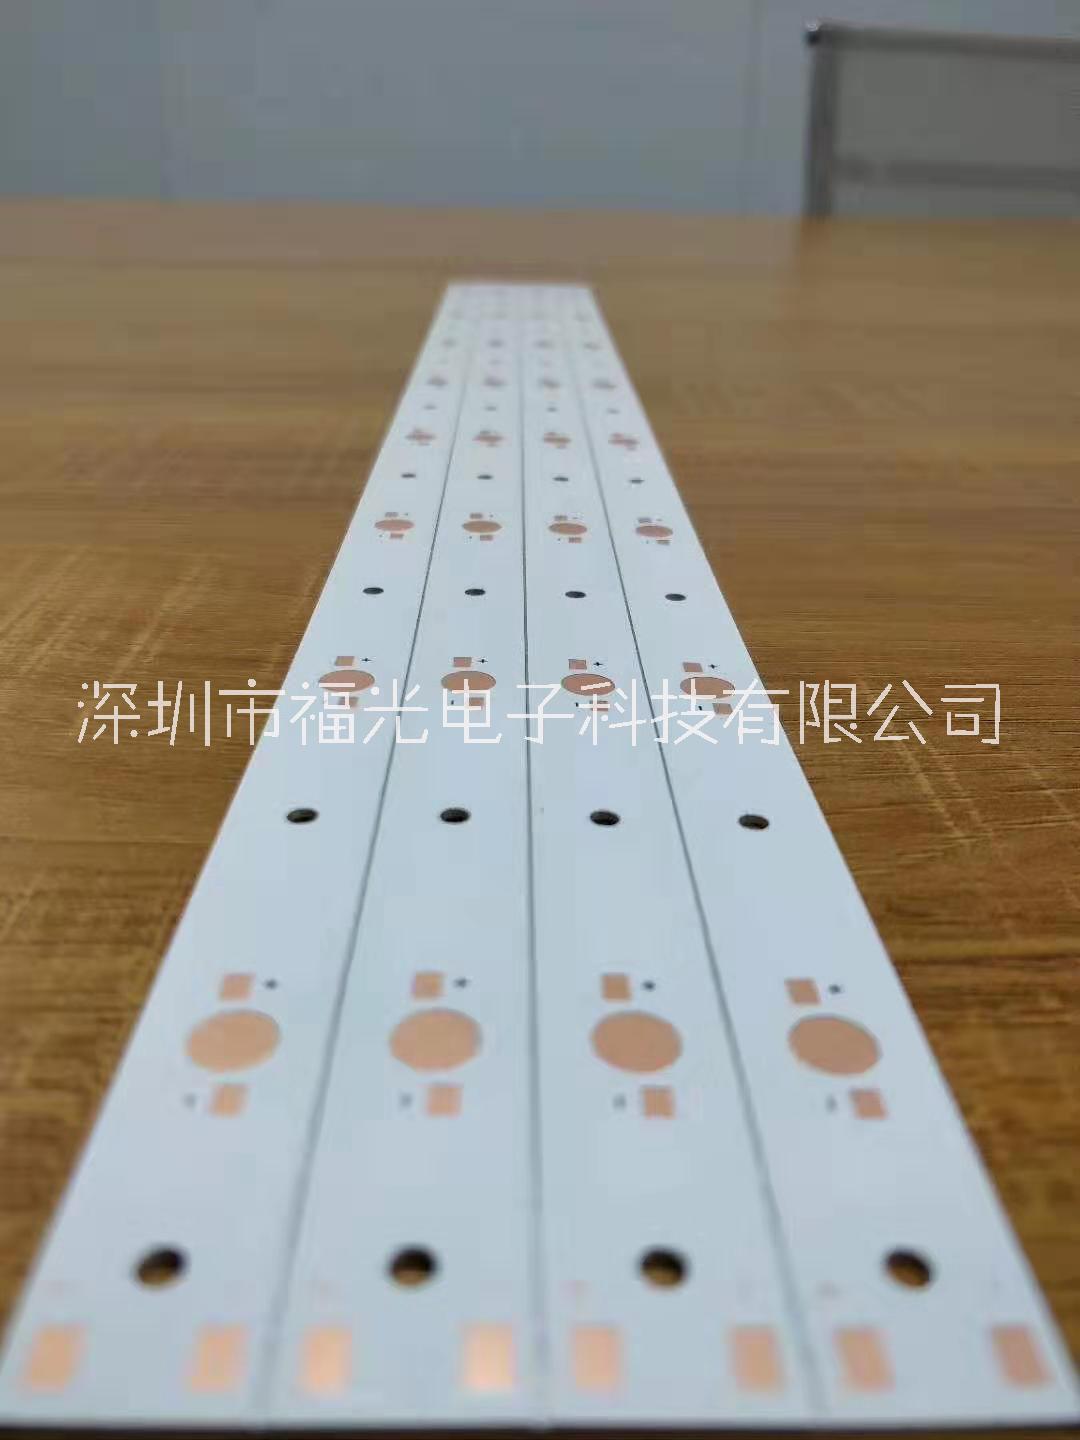 深圳市福光FR-4线路板厂家